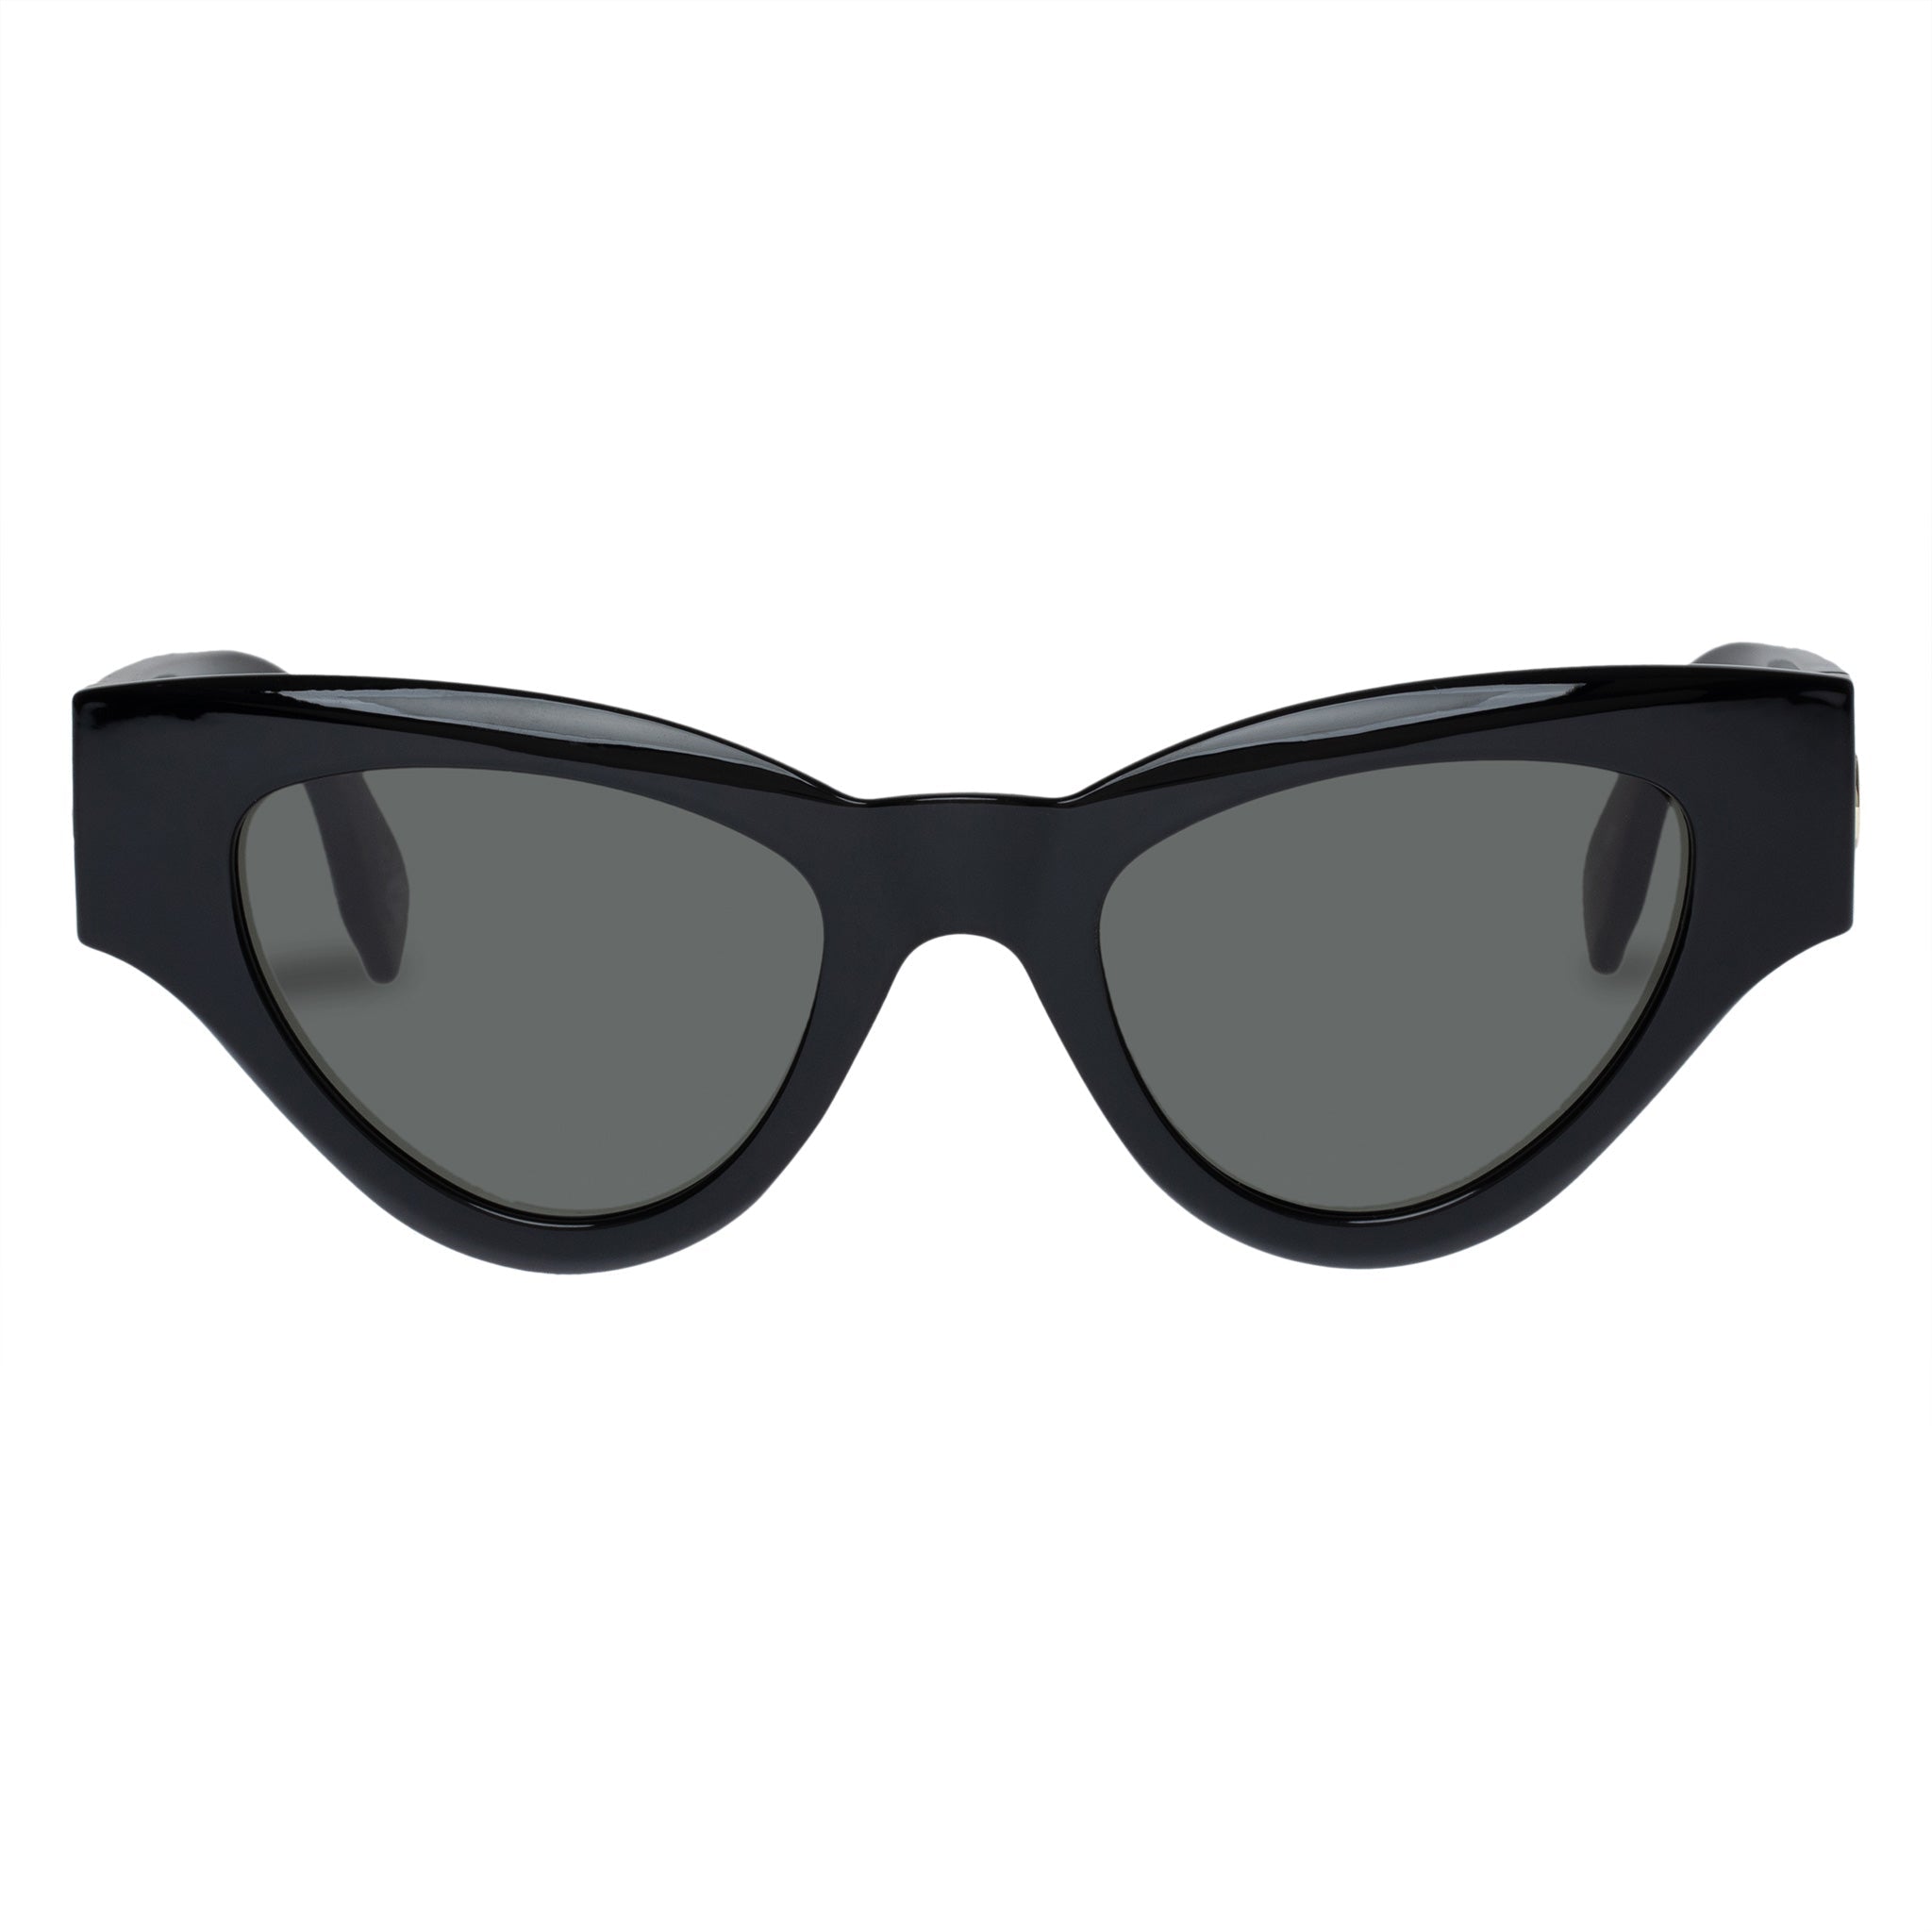 LE SPECS FANPLASTICO Black (Le Sustain Collection) Sunglasses | PresenceConcept.com